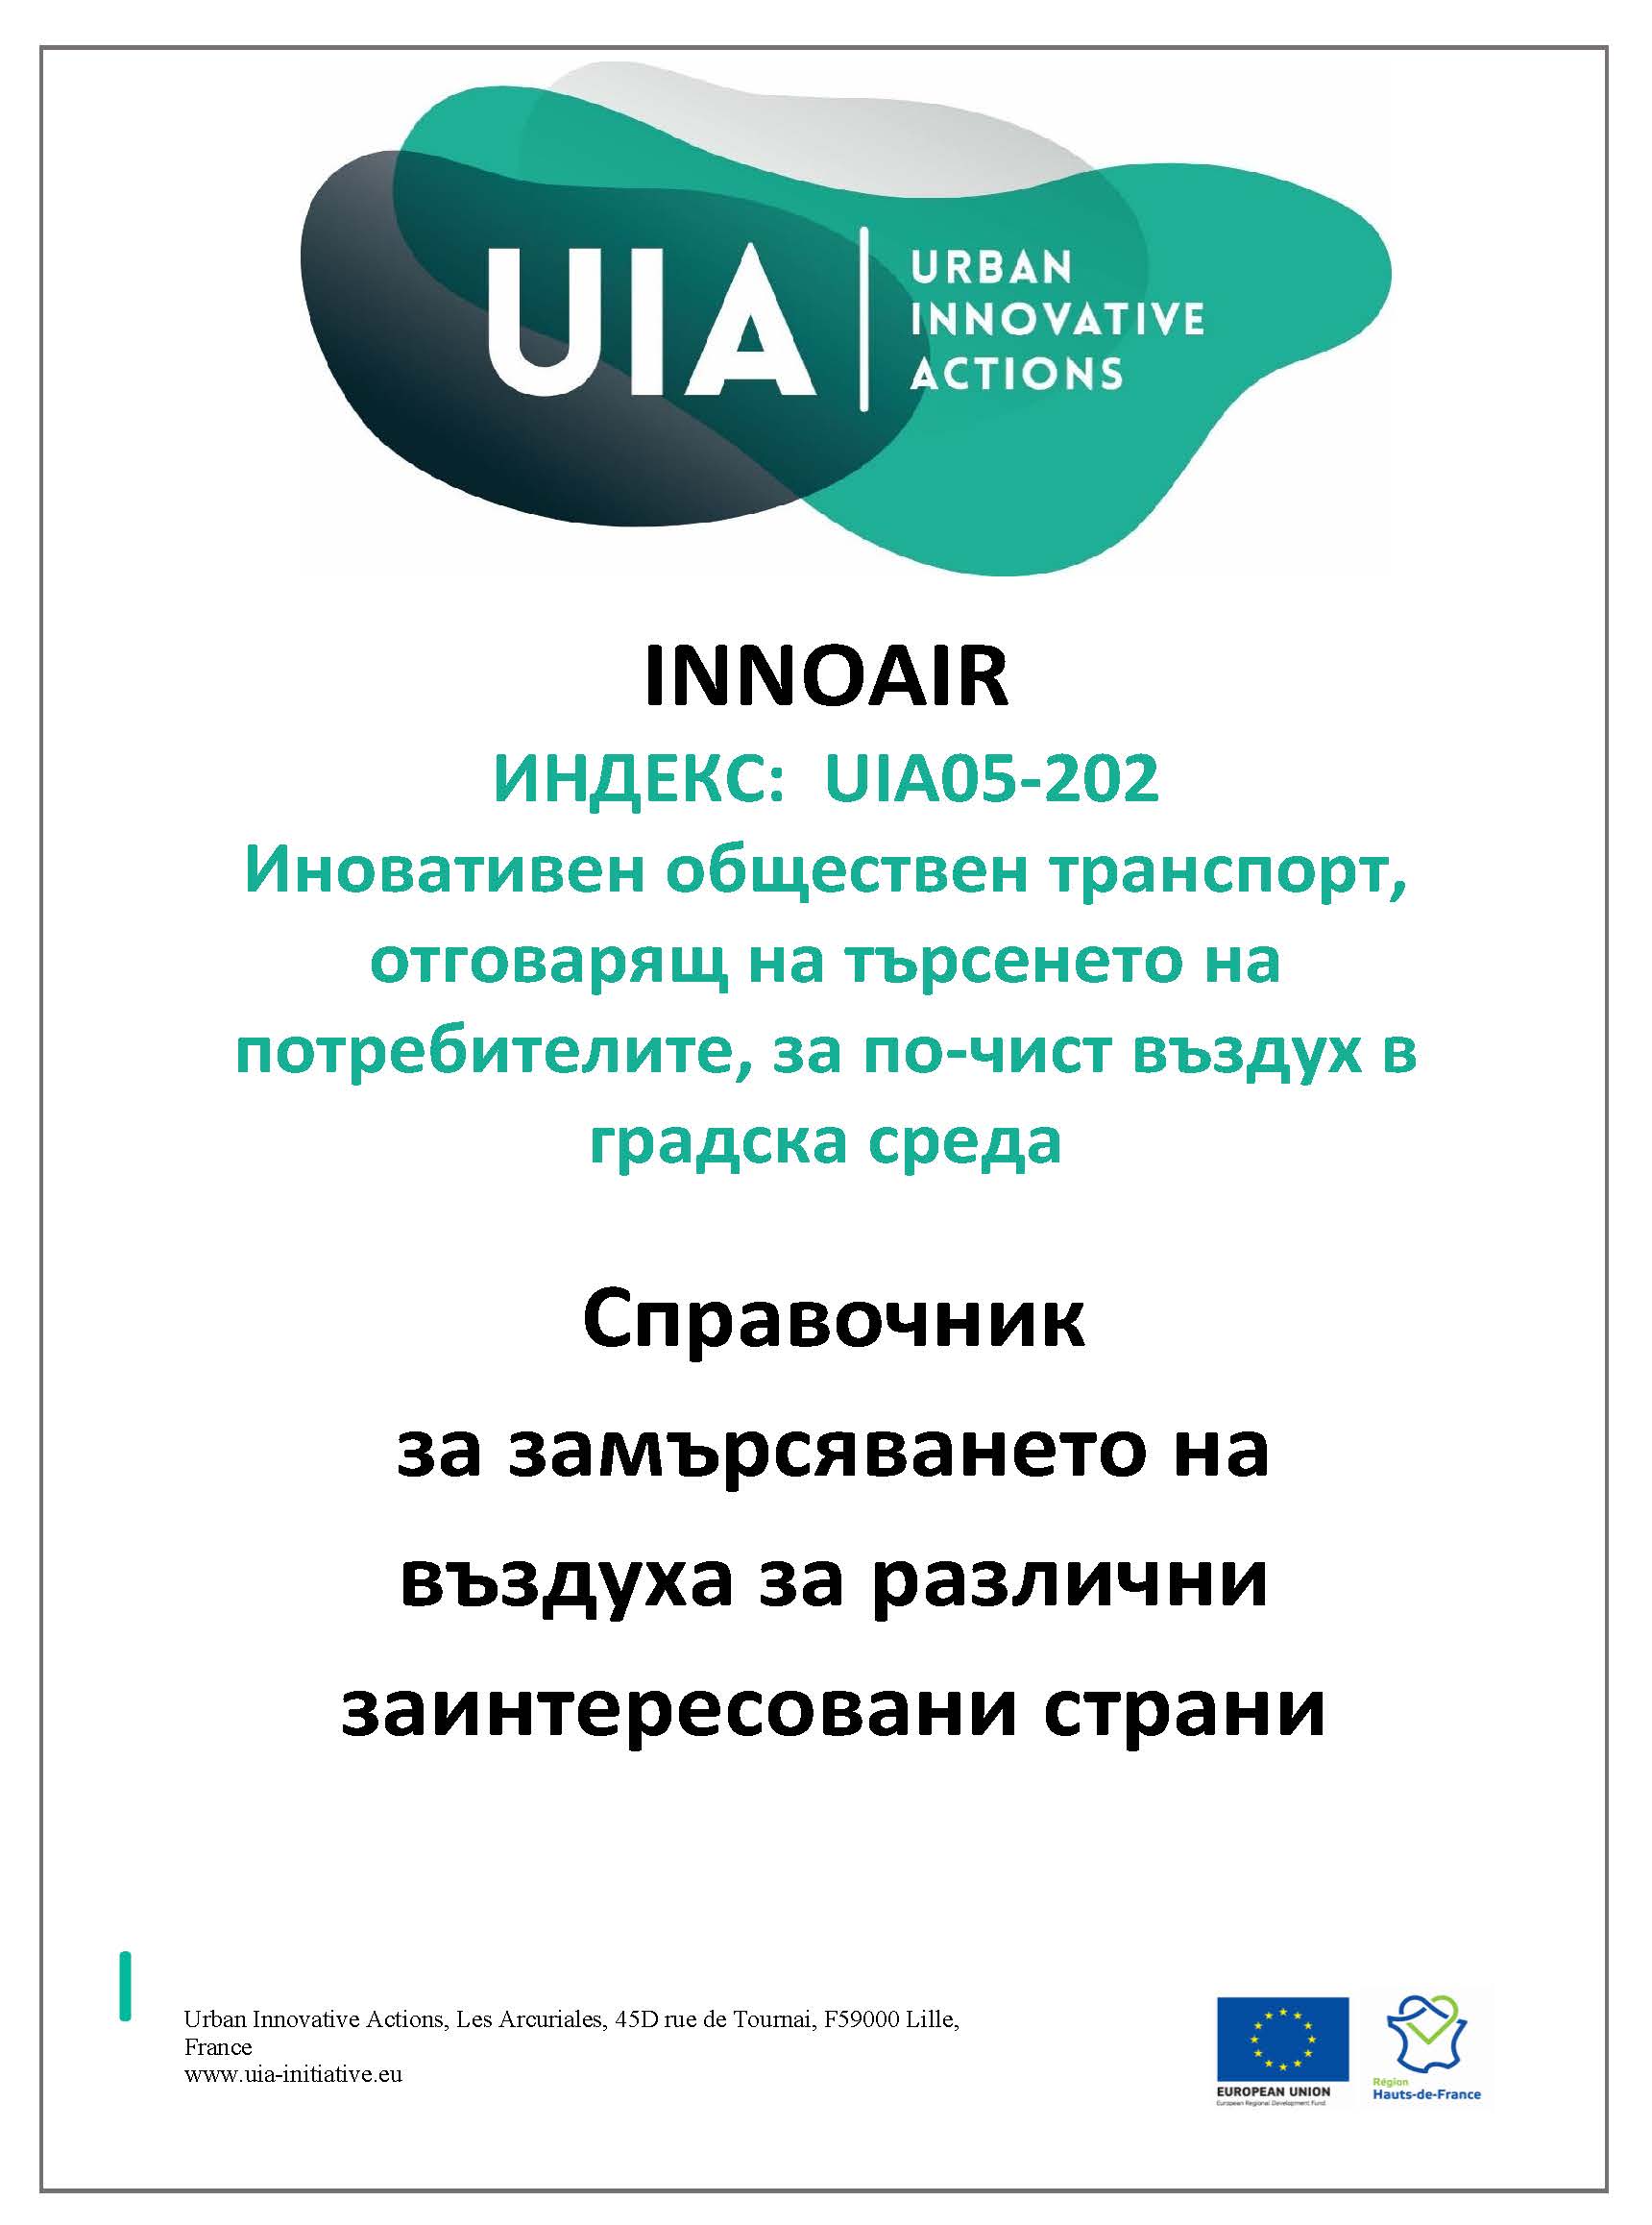 INNOAIR представя Справочник за замърсяването на въздуха за различни заинтересовани страни